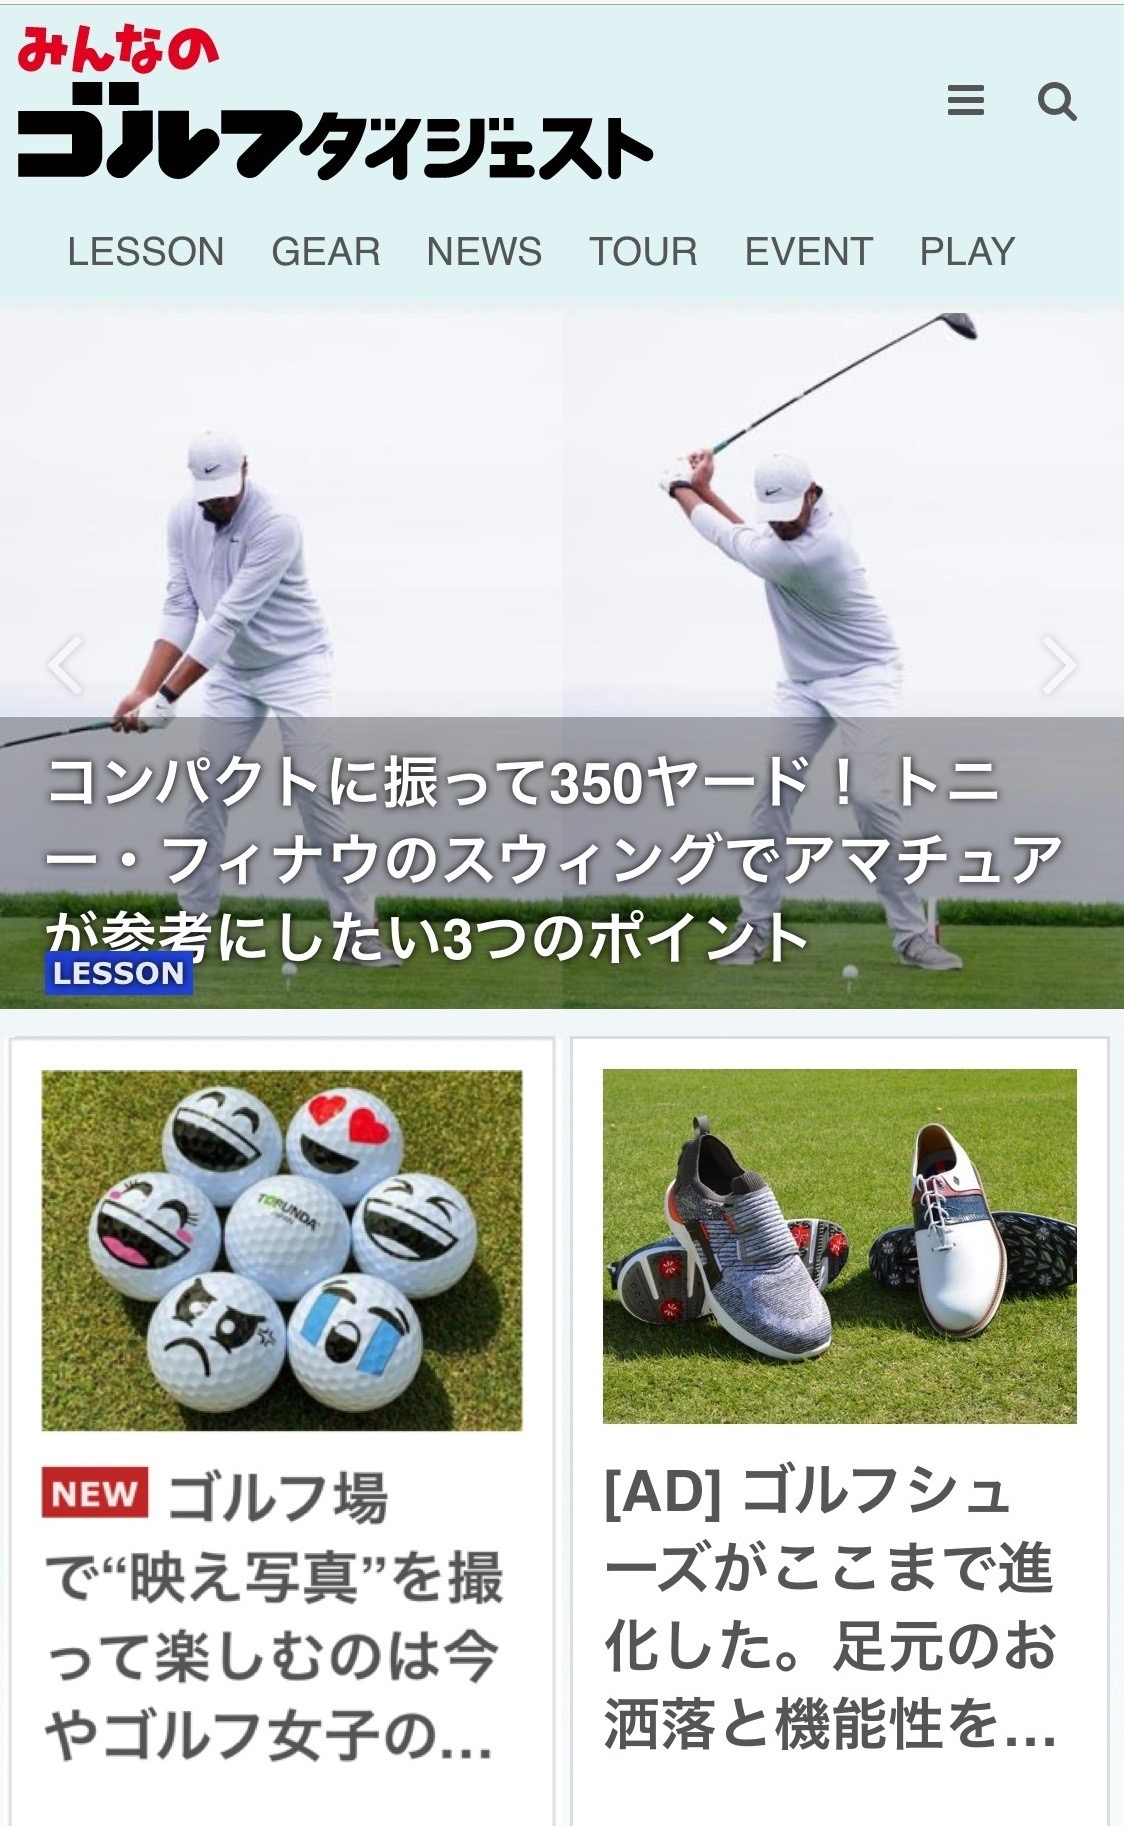 撮るんだ かわいい 可愛い ゴルフボール KBS京都 テレビ 紹介